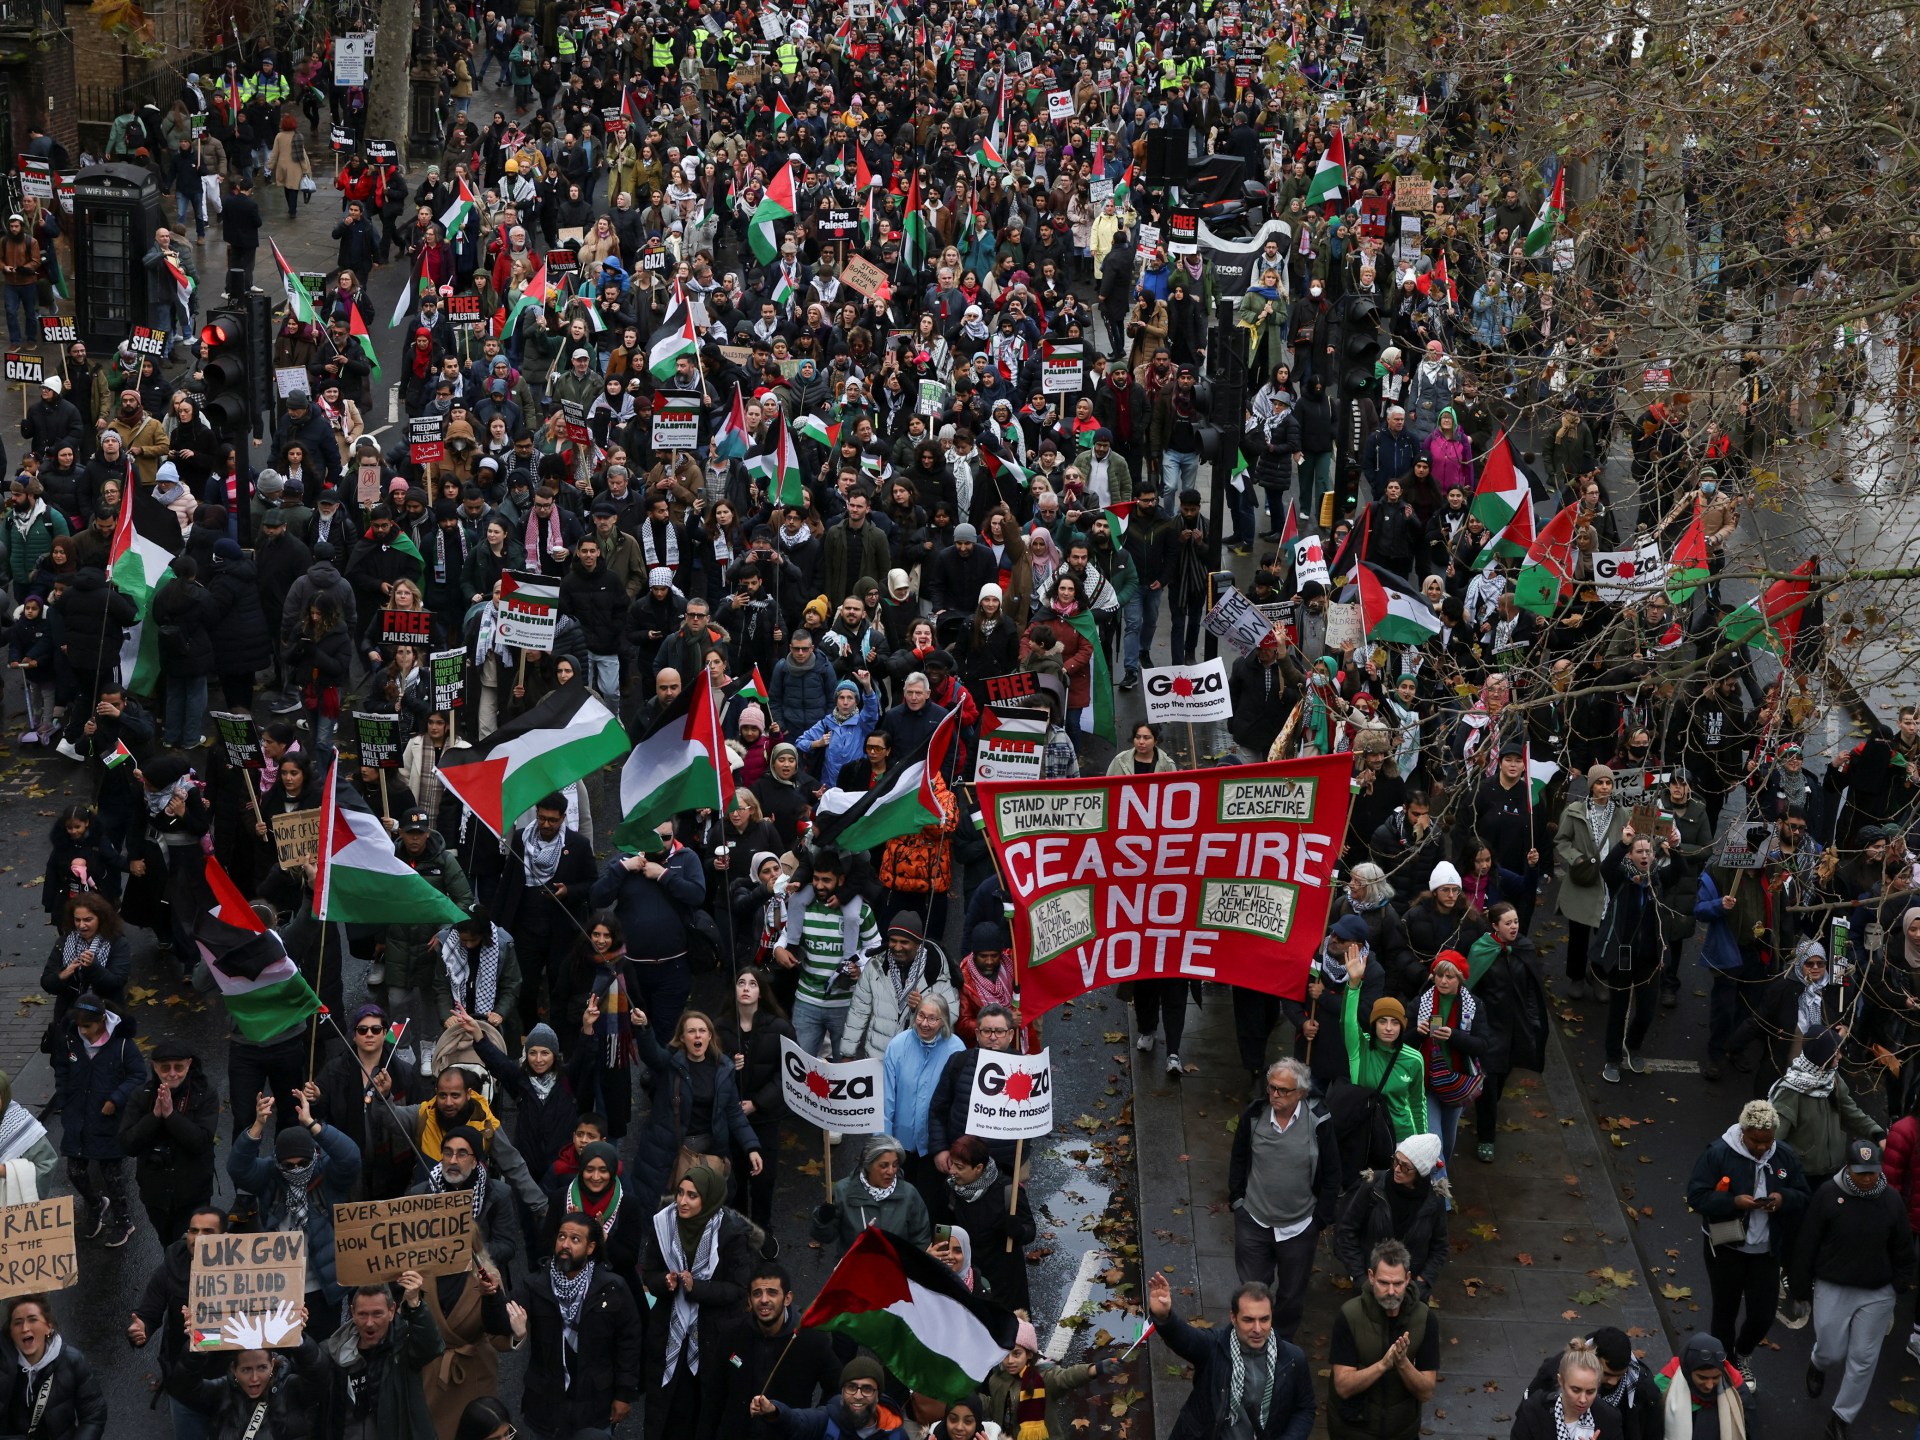 Des dizaines de milliers de personnes défilent à nouveau à Londres pour réclamer un cessez-le-feu à Gaza |  Conflit israélo-palestinien Actualités